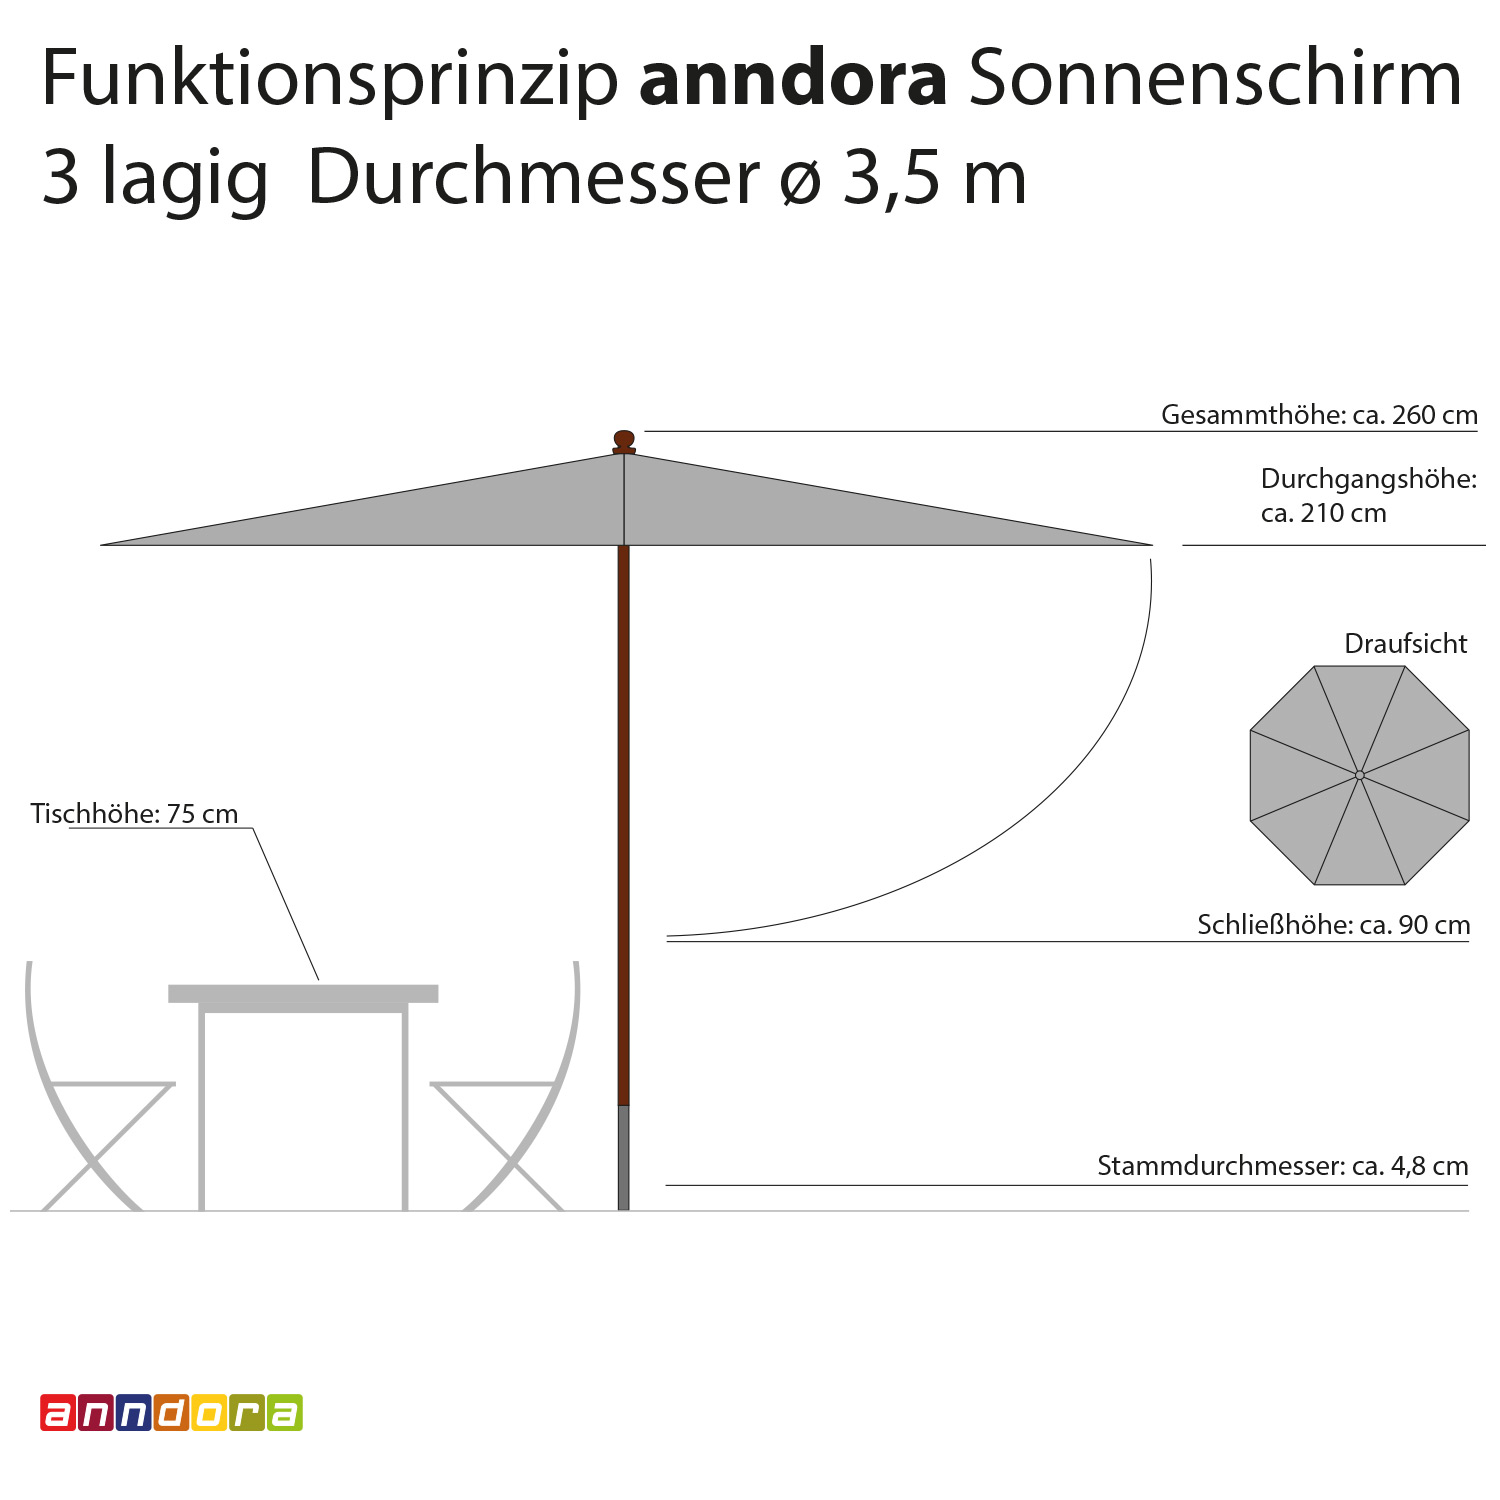 anndora Sonnenschirm 3,5m rund 3-lagig Rot UV-Schutz - 3